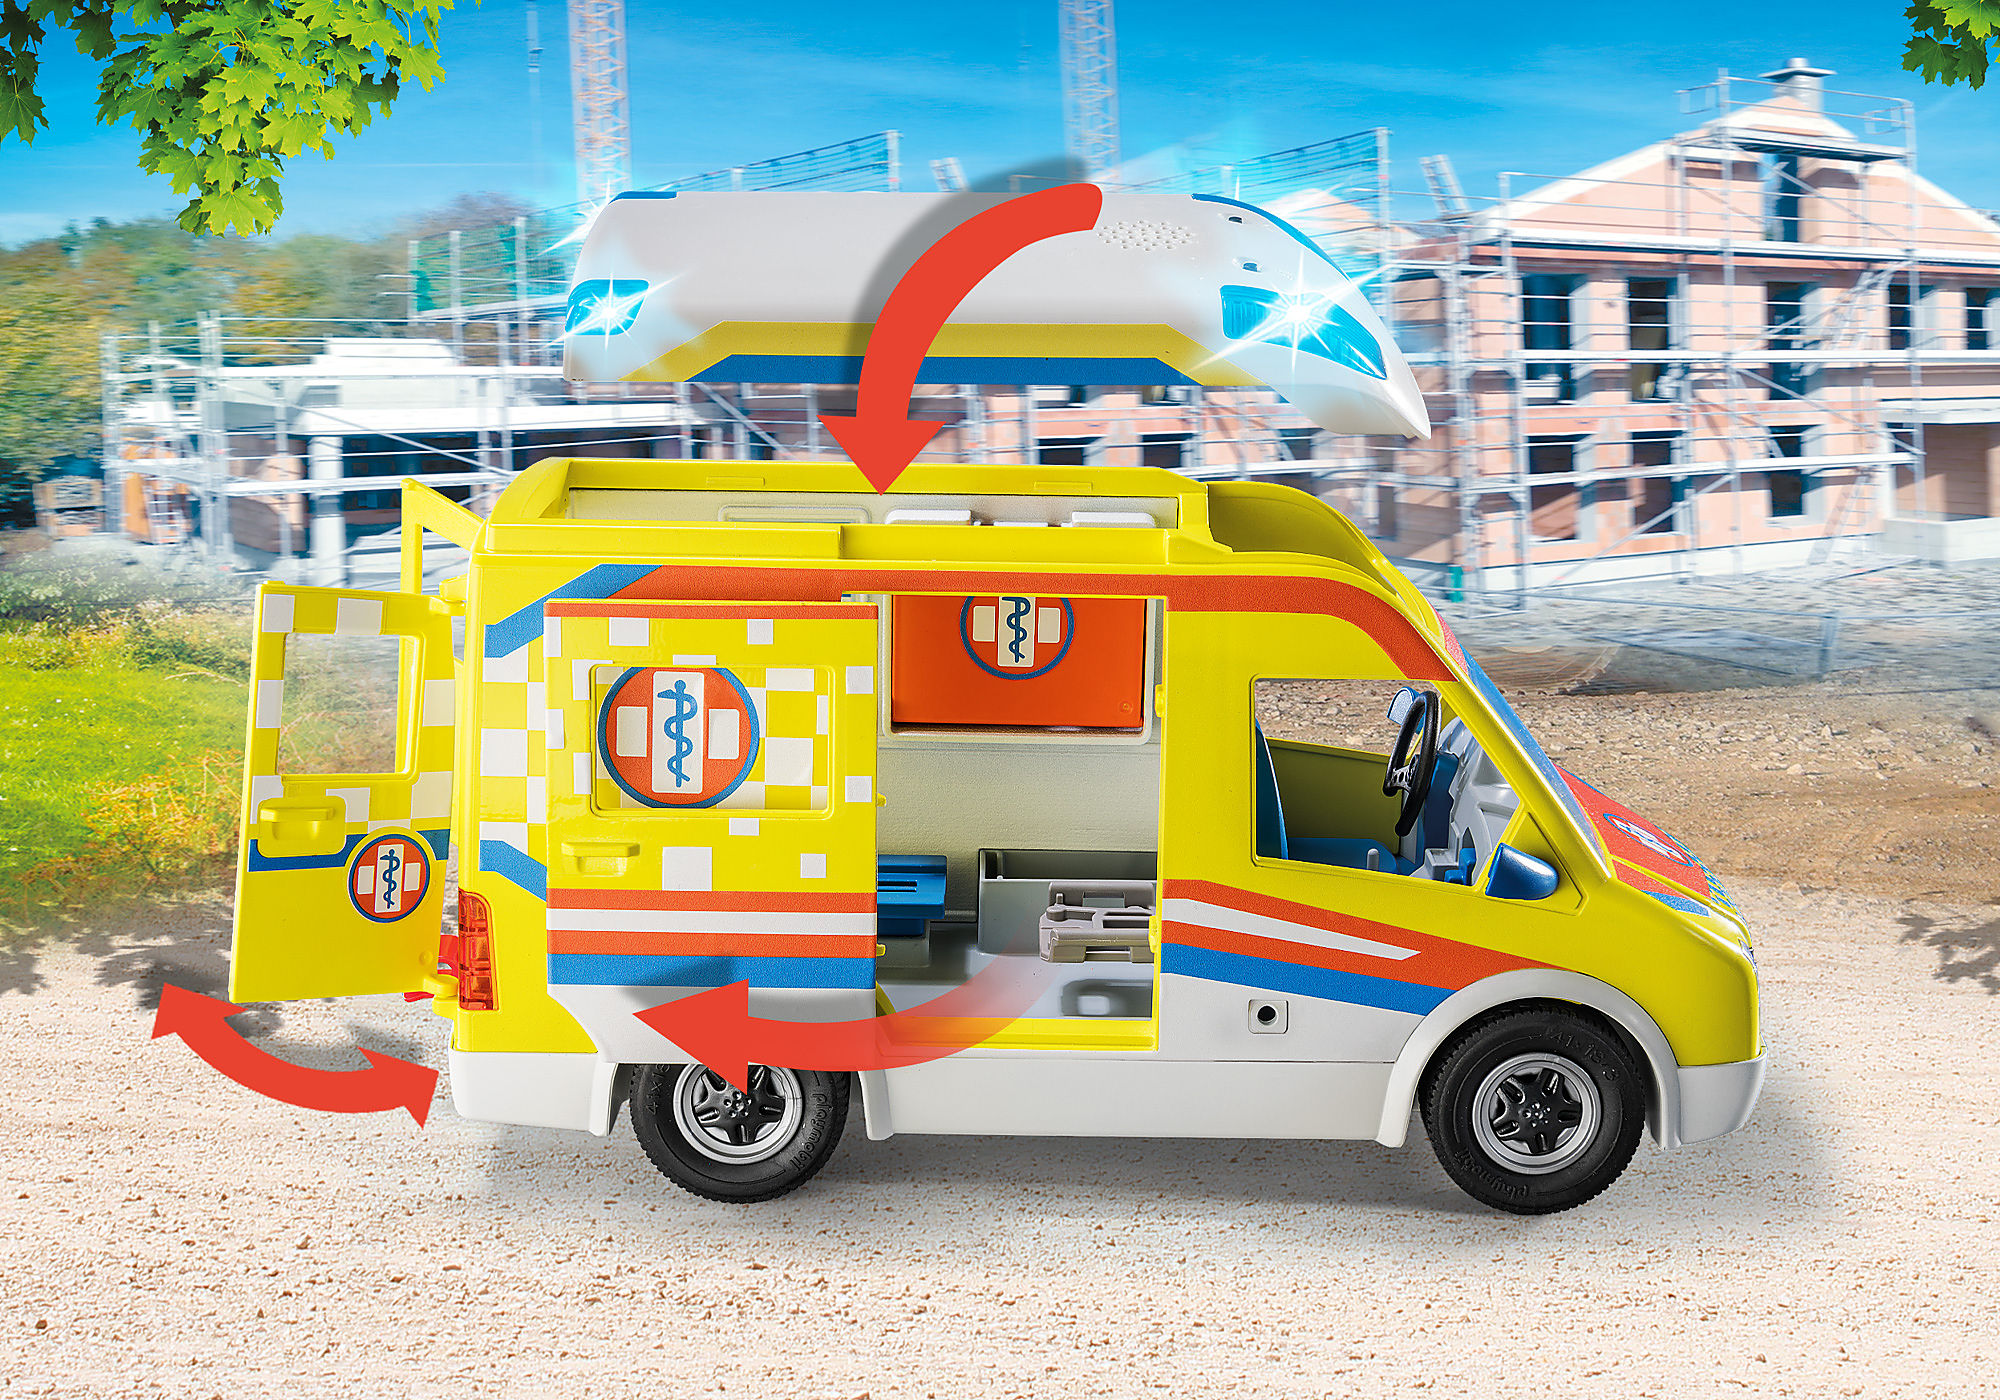 Ambulance - 71202